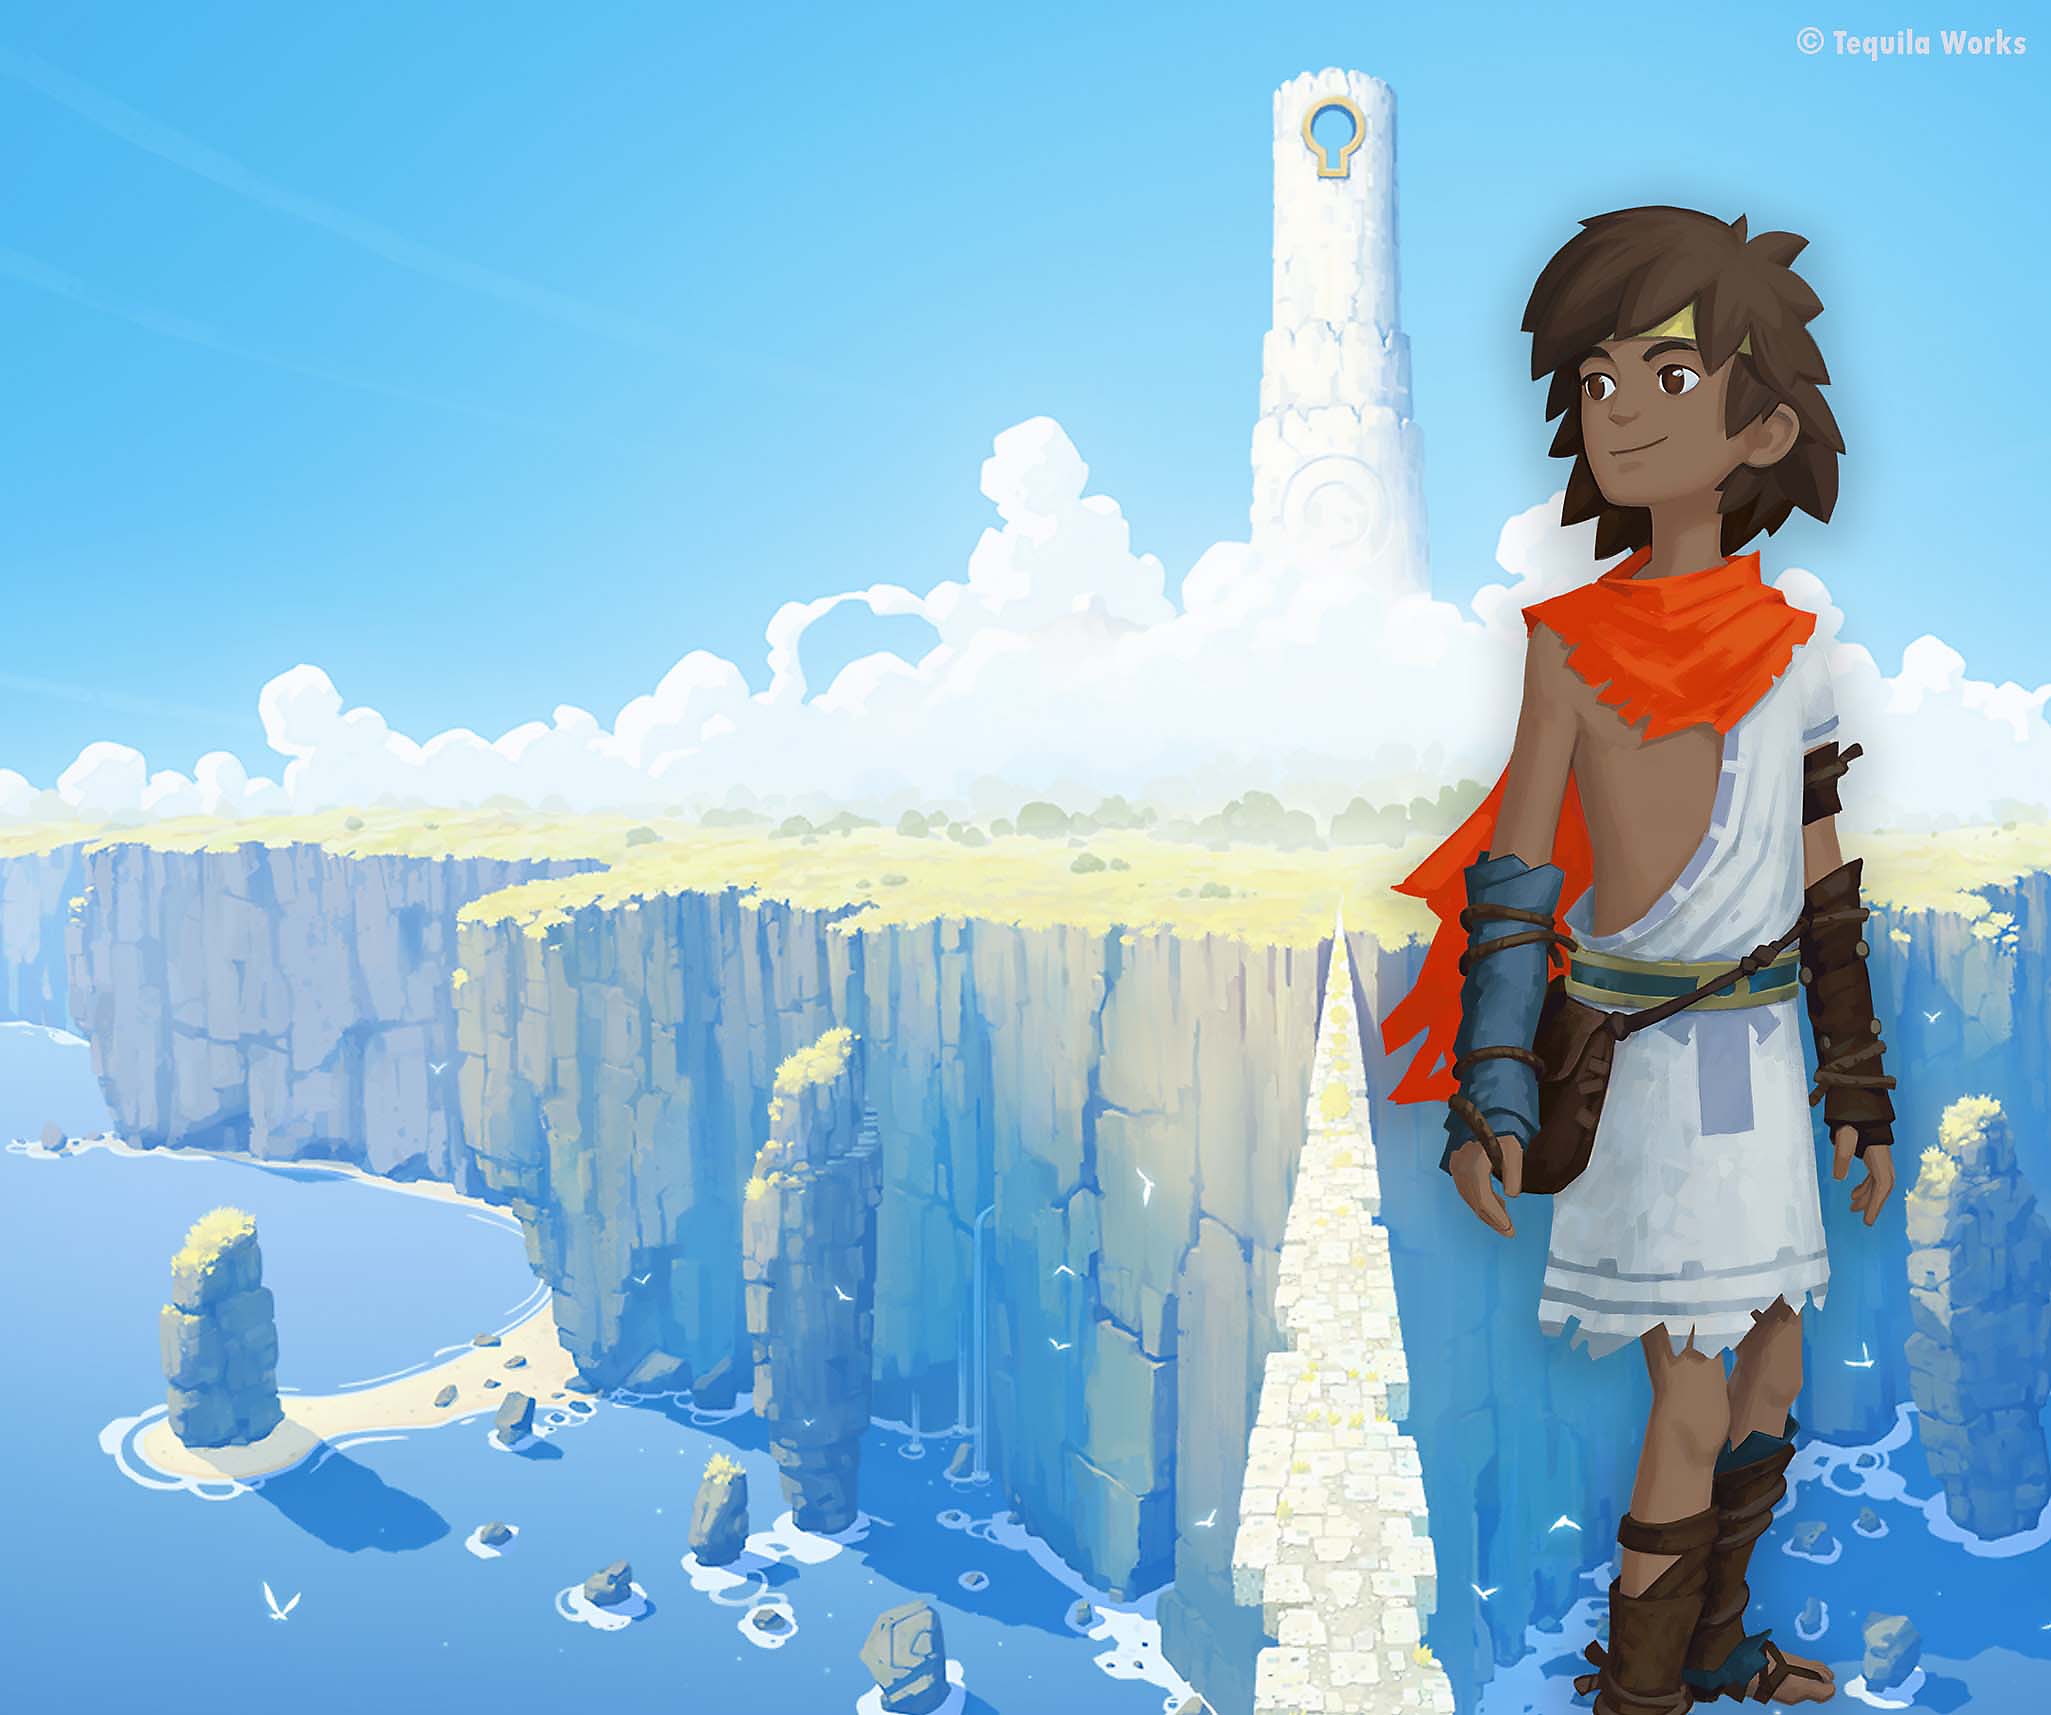 Arte guía de RiME que presenta al protagonista superpuesto frente a una imponente isla cubierta de nubes.